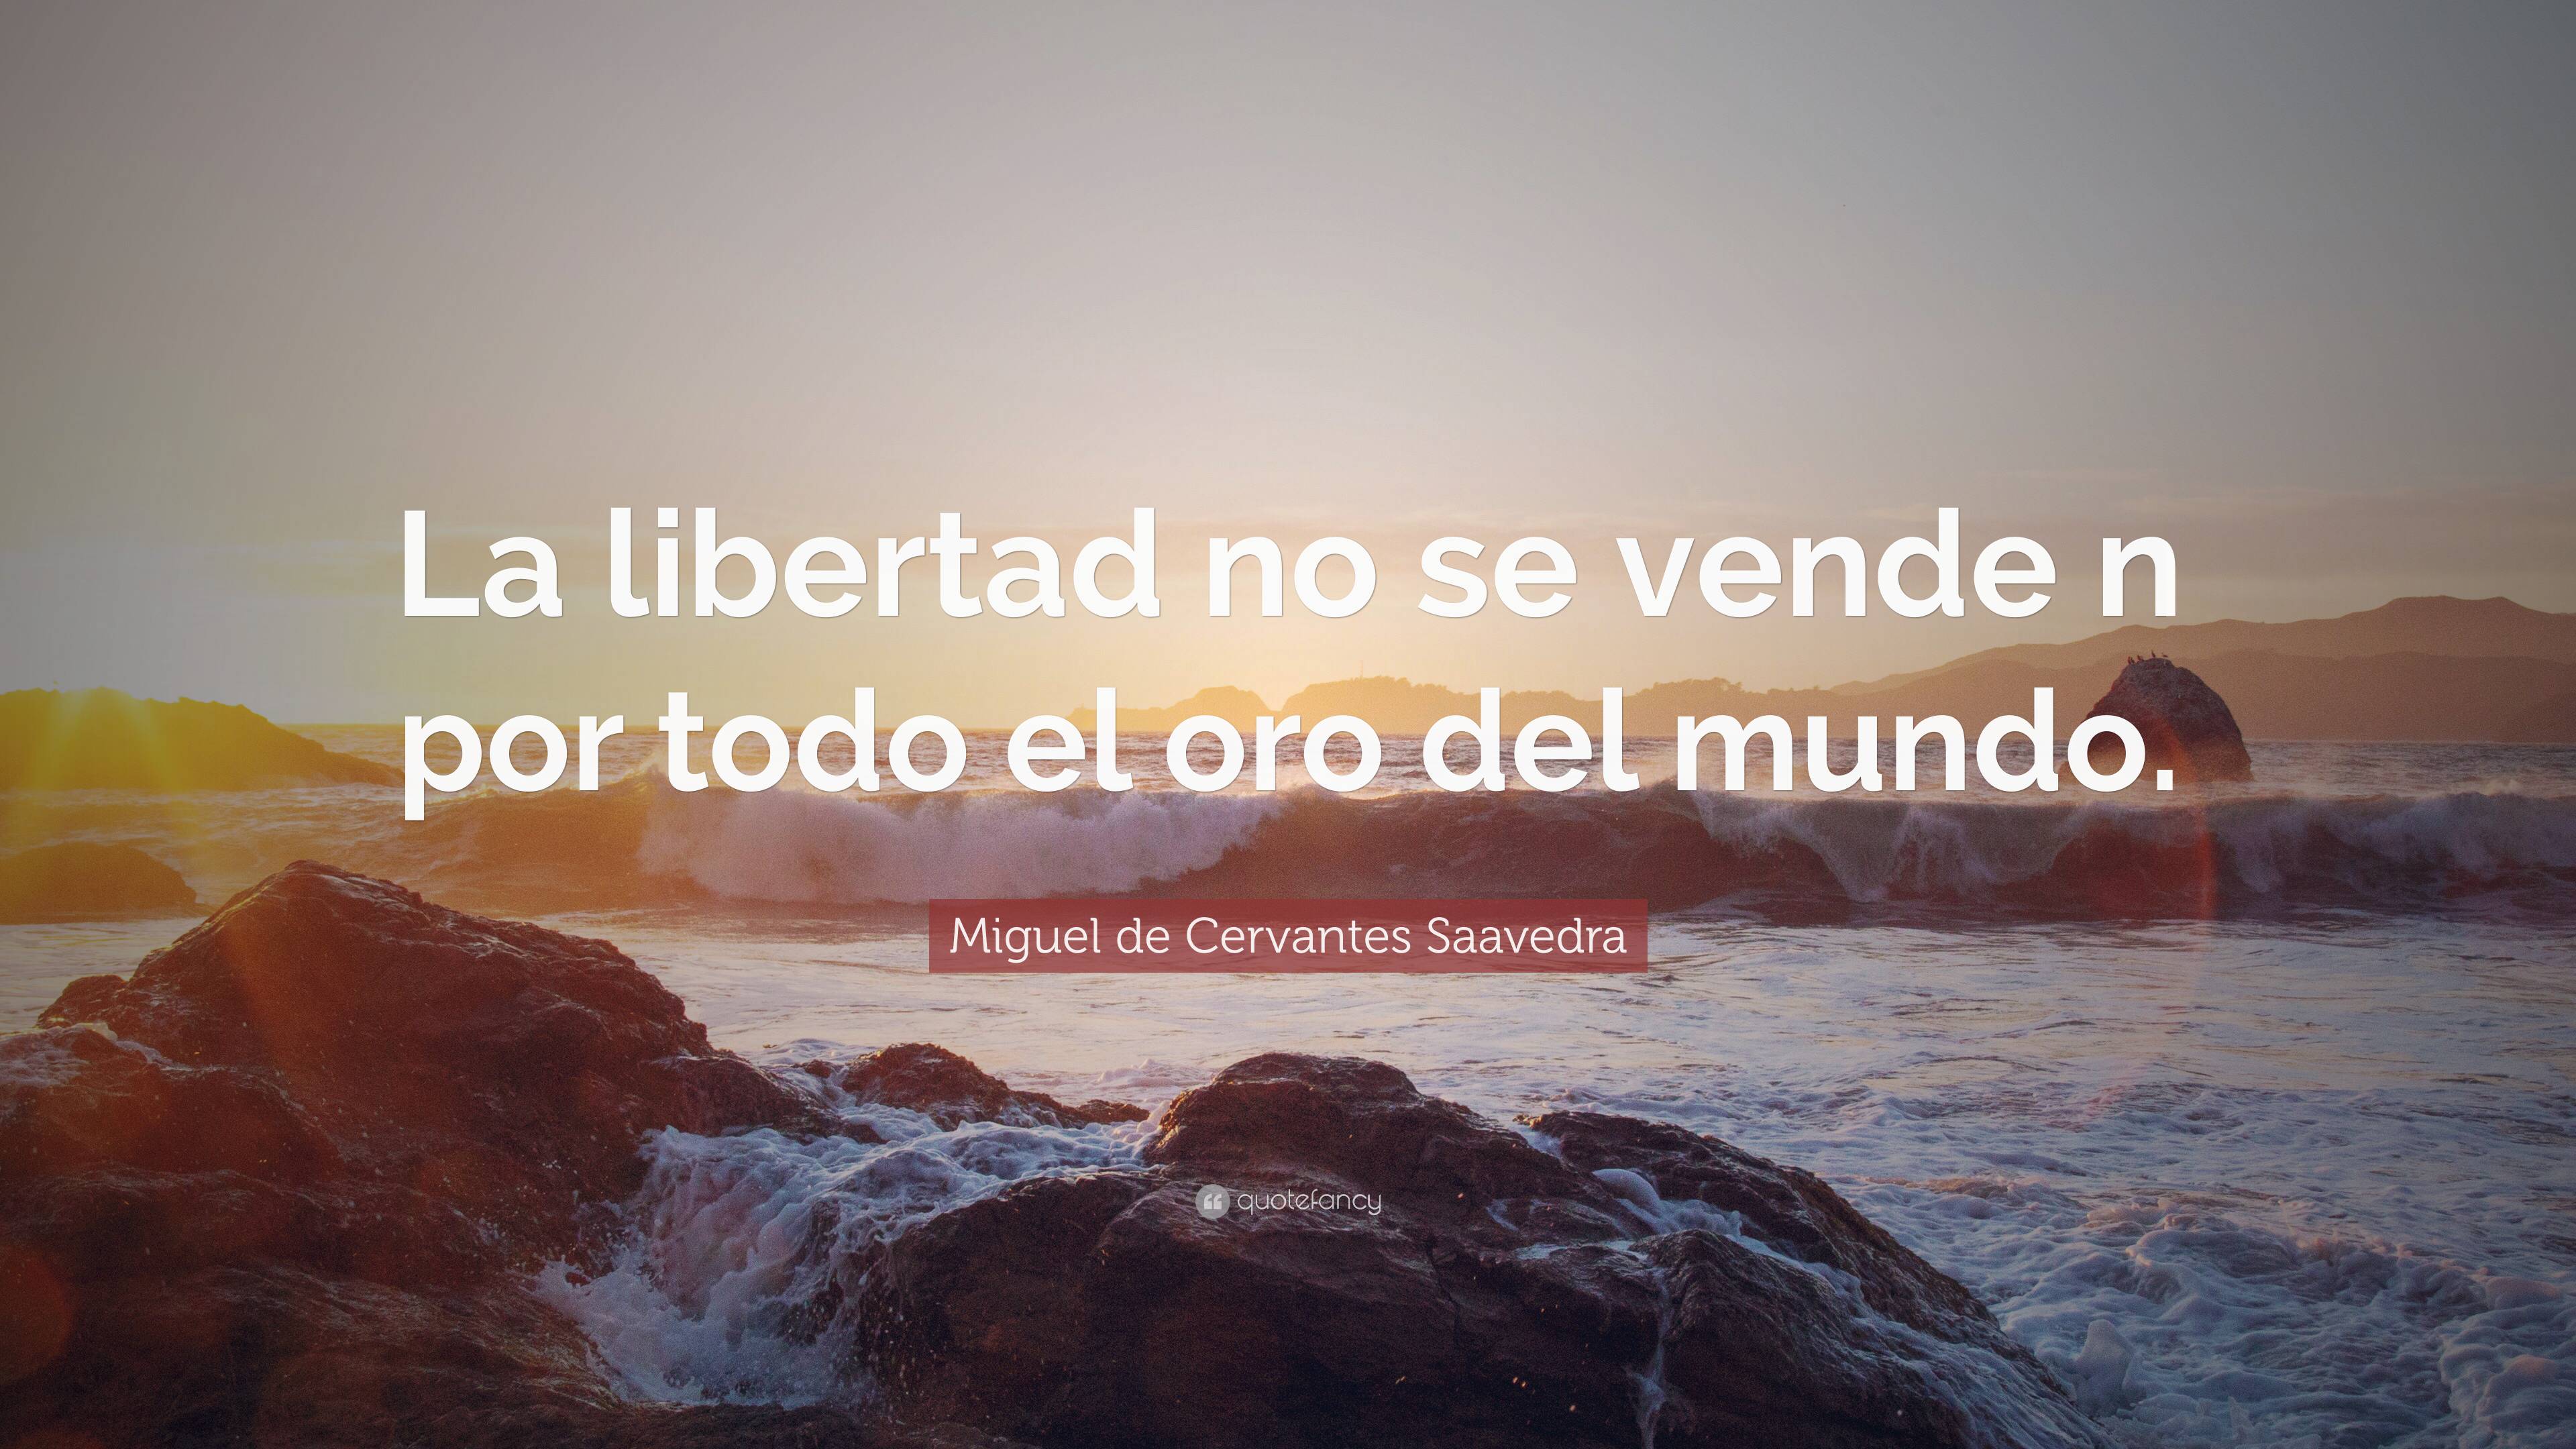 Miguel de Cervantes Saavedra Quote: “La libertad no se vende n por todo ...